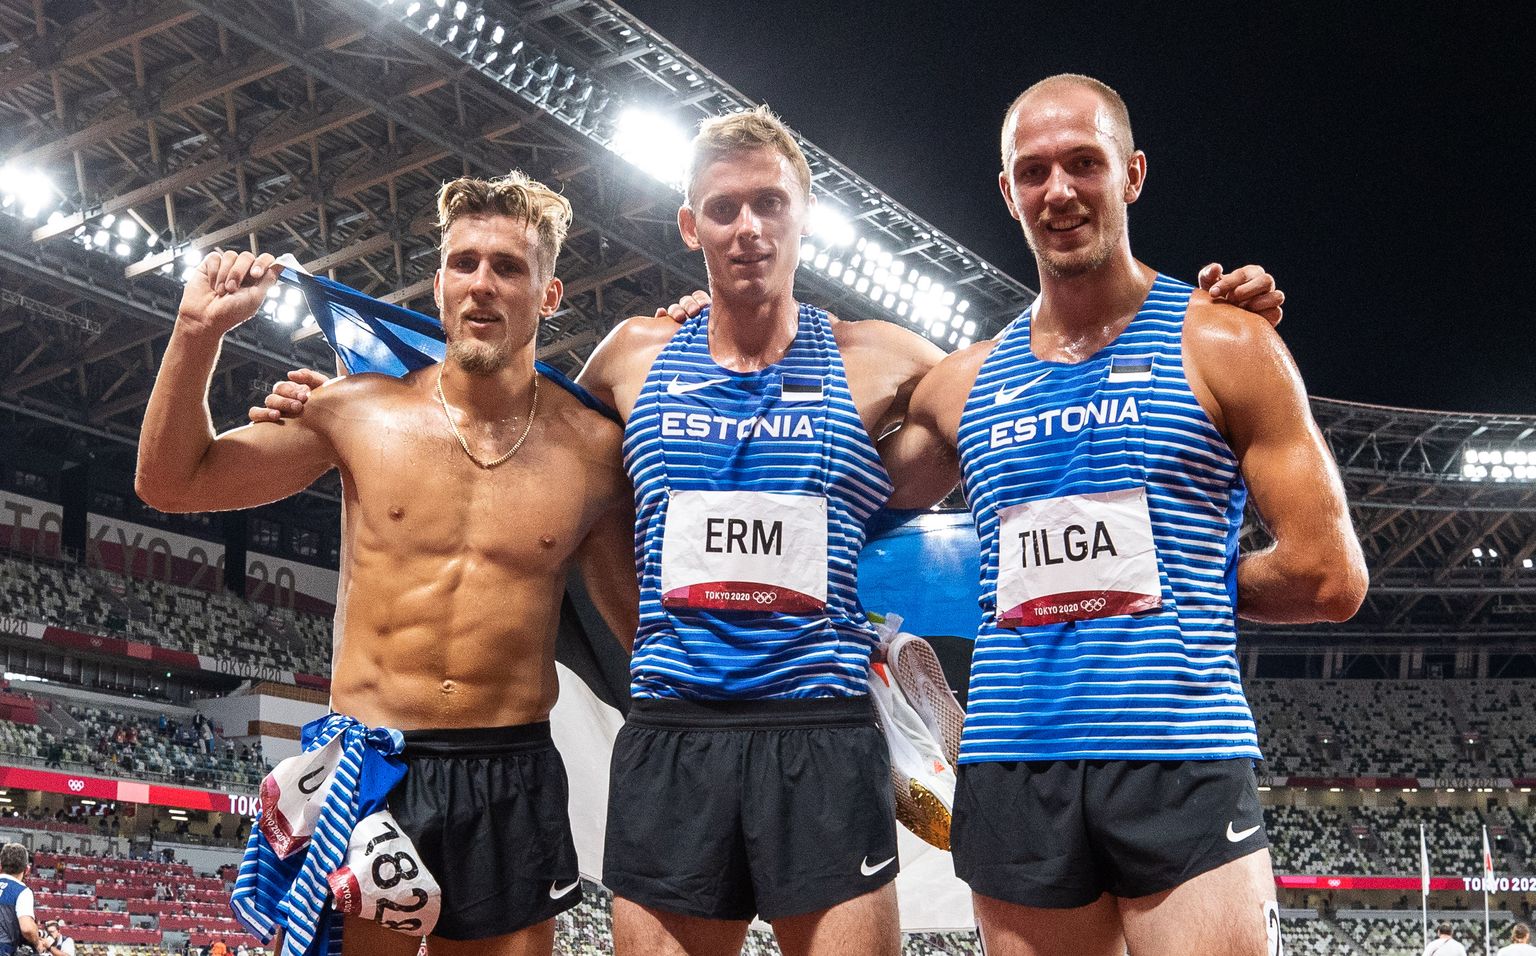 Tokyo olümpial võistelnud kolm Eesti dekatleeti (Maicel Uibo, Johannes Erm ja Karel Tilga) jäid oma paremate päevade tulemustest kaugele, kuid ei lasknud sellest liigselt enda tuju rikkuda.